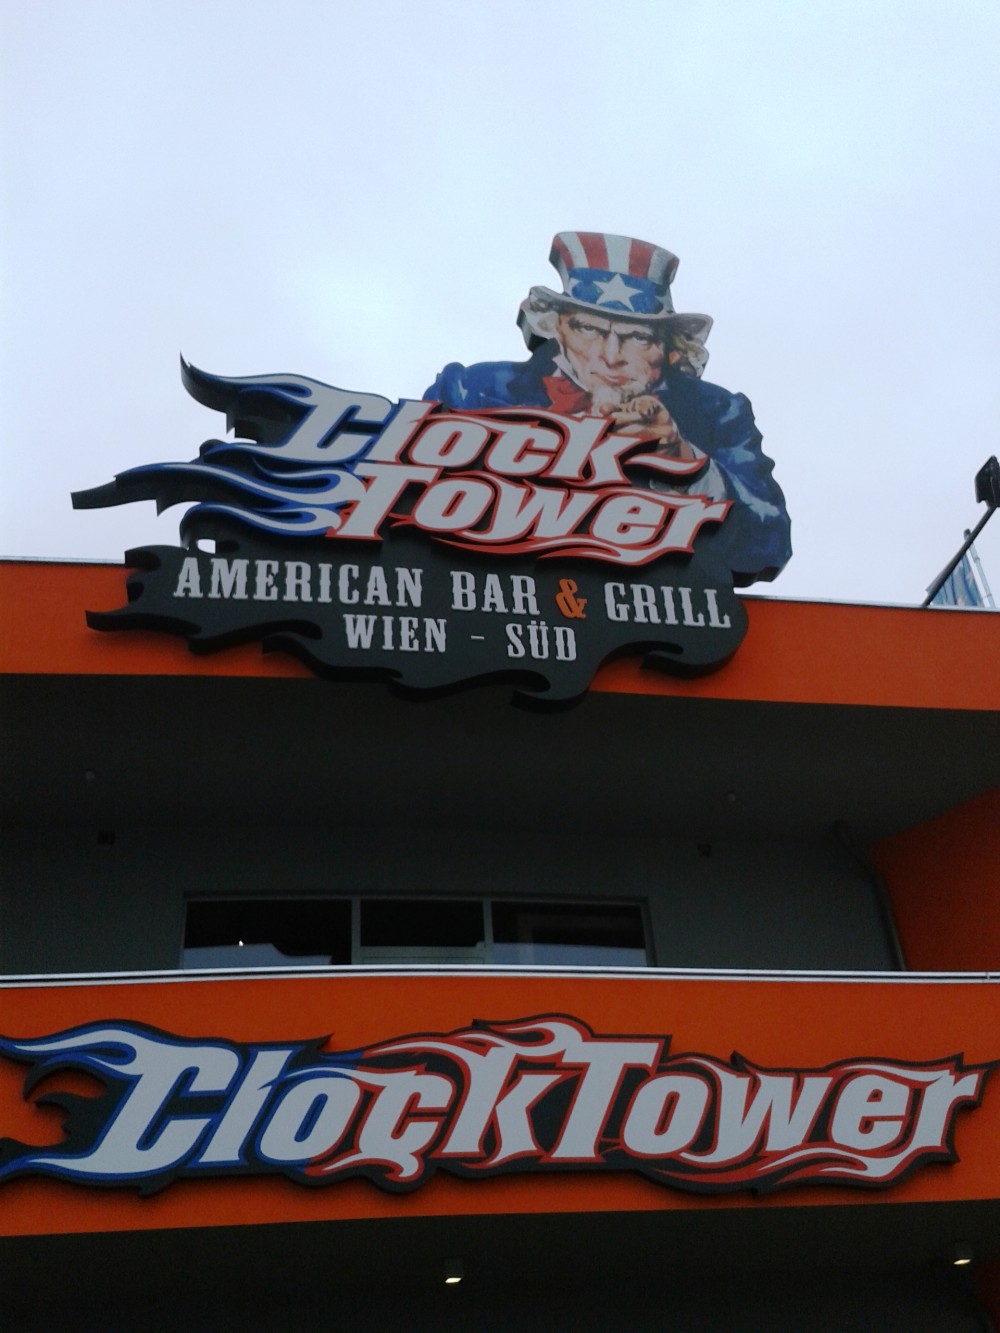 ClockTower - Lokalaußenansicht-'Uncle Sam wants you!' - Clocktower American Bar & Grill - Wien-Süd - Brunn am Gebirge